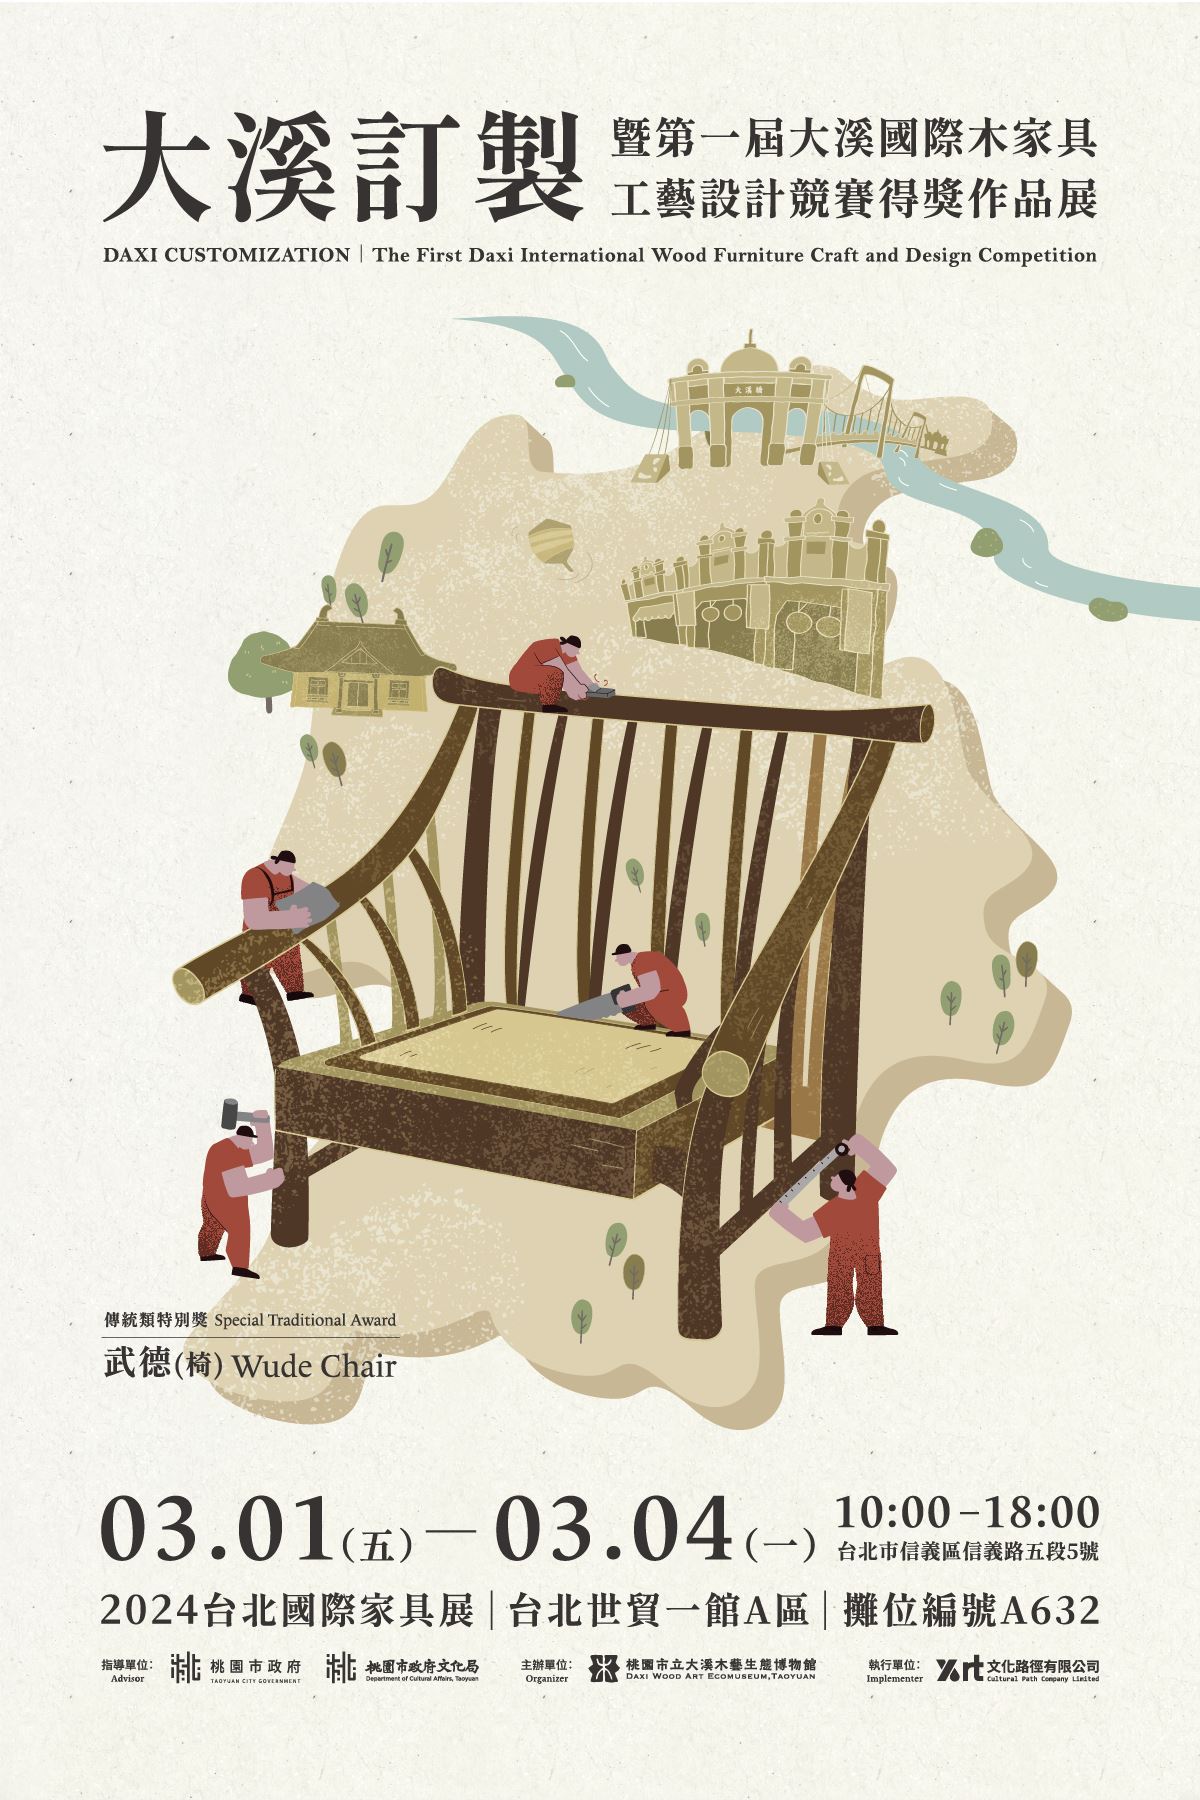 「大溪訂製」美好木生活  台北國際家具展  展現百年工藝精...